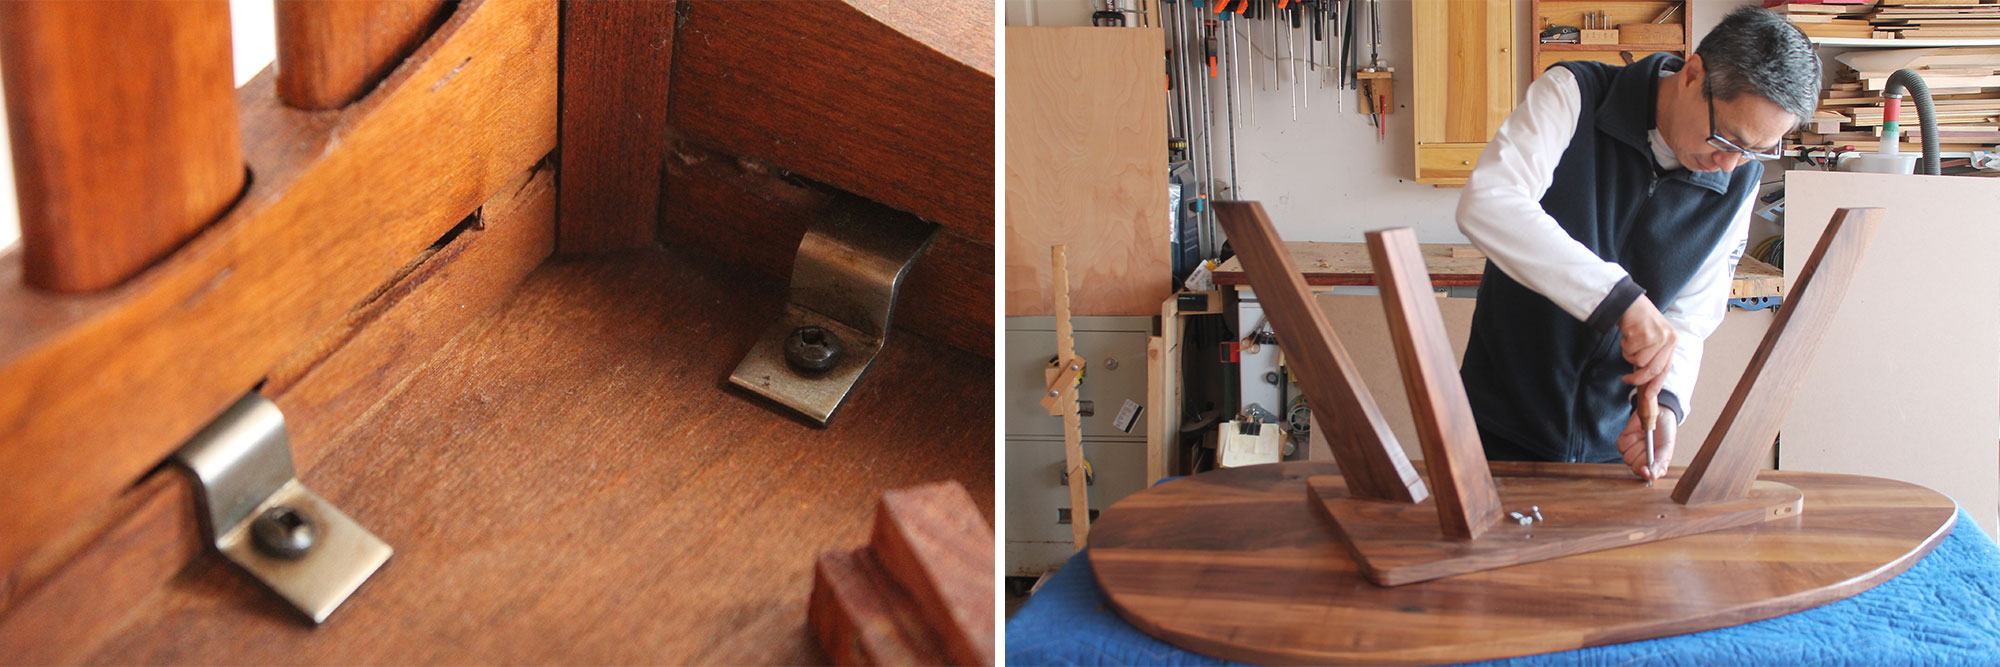 Image de gauche : Fixation d'un plateau de table avec des attaches en métal. Image de droite : Charles Mak vissant un plateau de table au piètement.